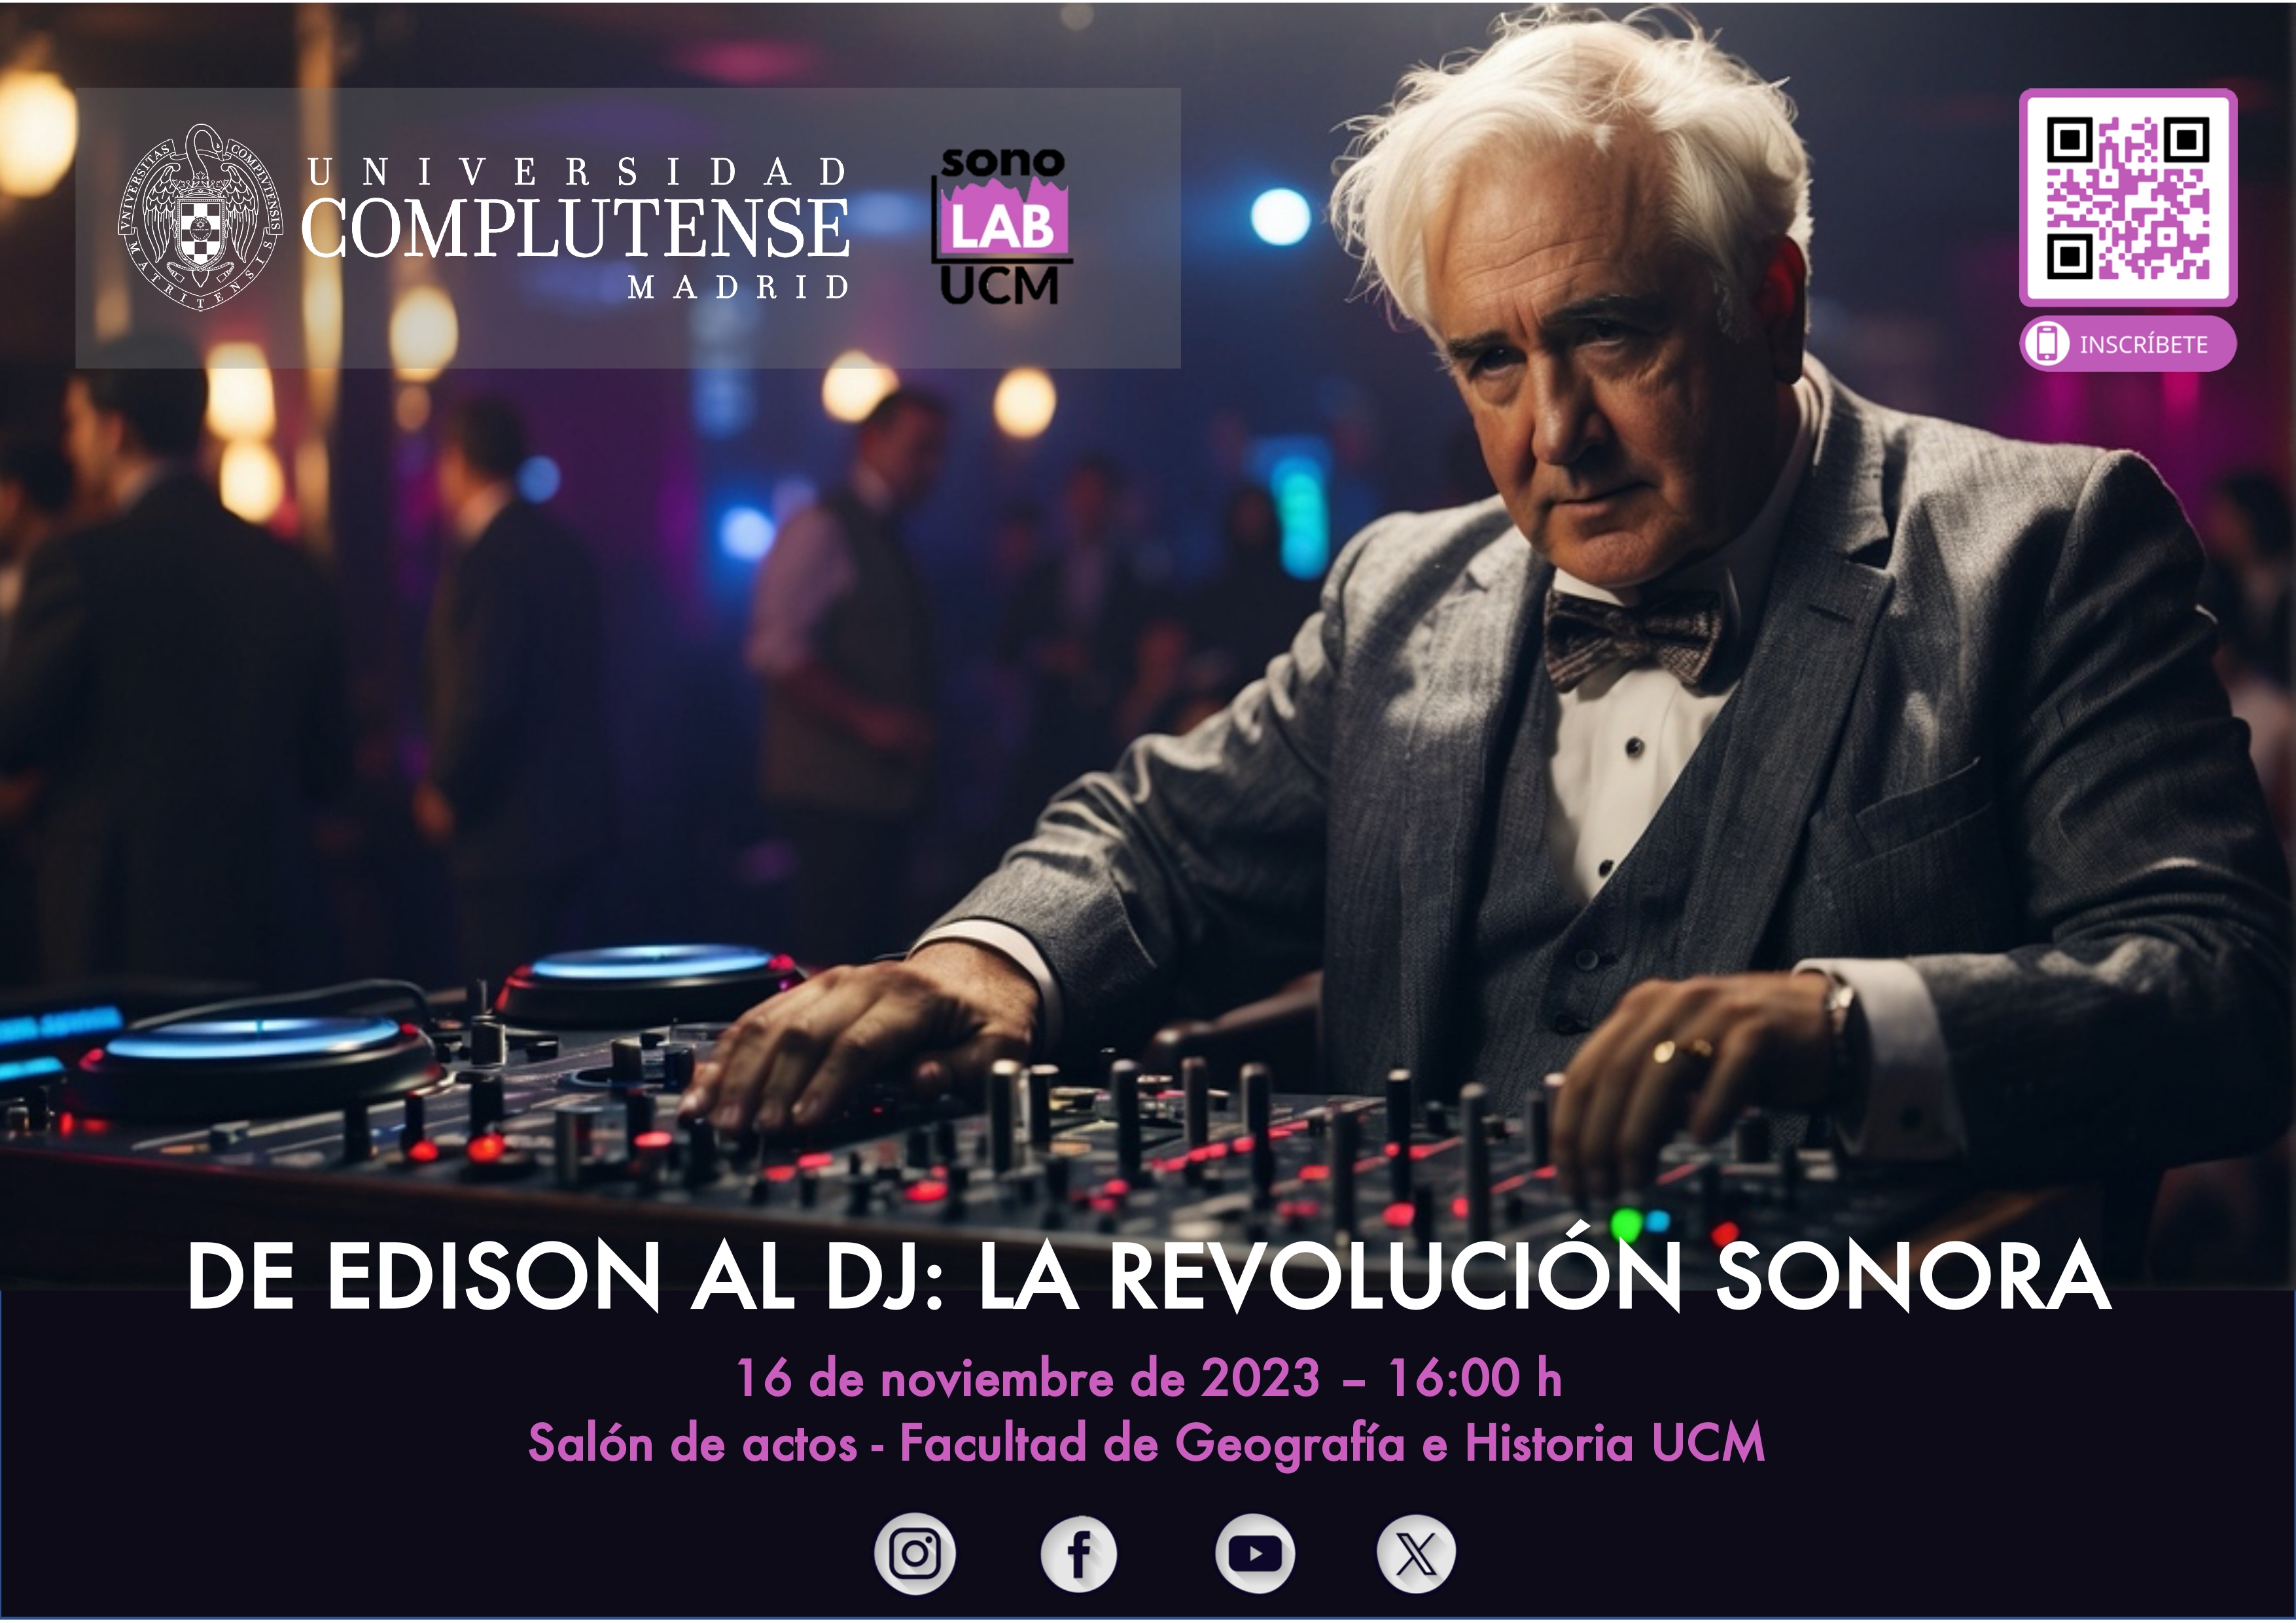 SonoLAB organiza la actividad "De Edison al DJ: La revolución sonora"